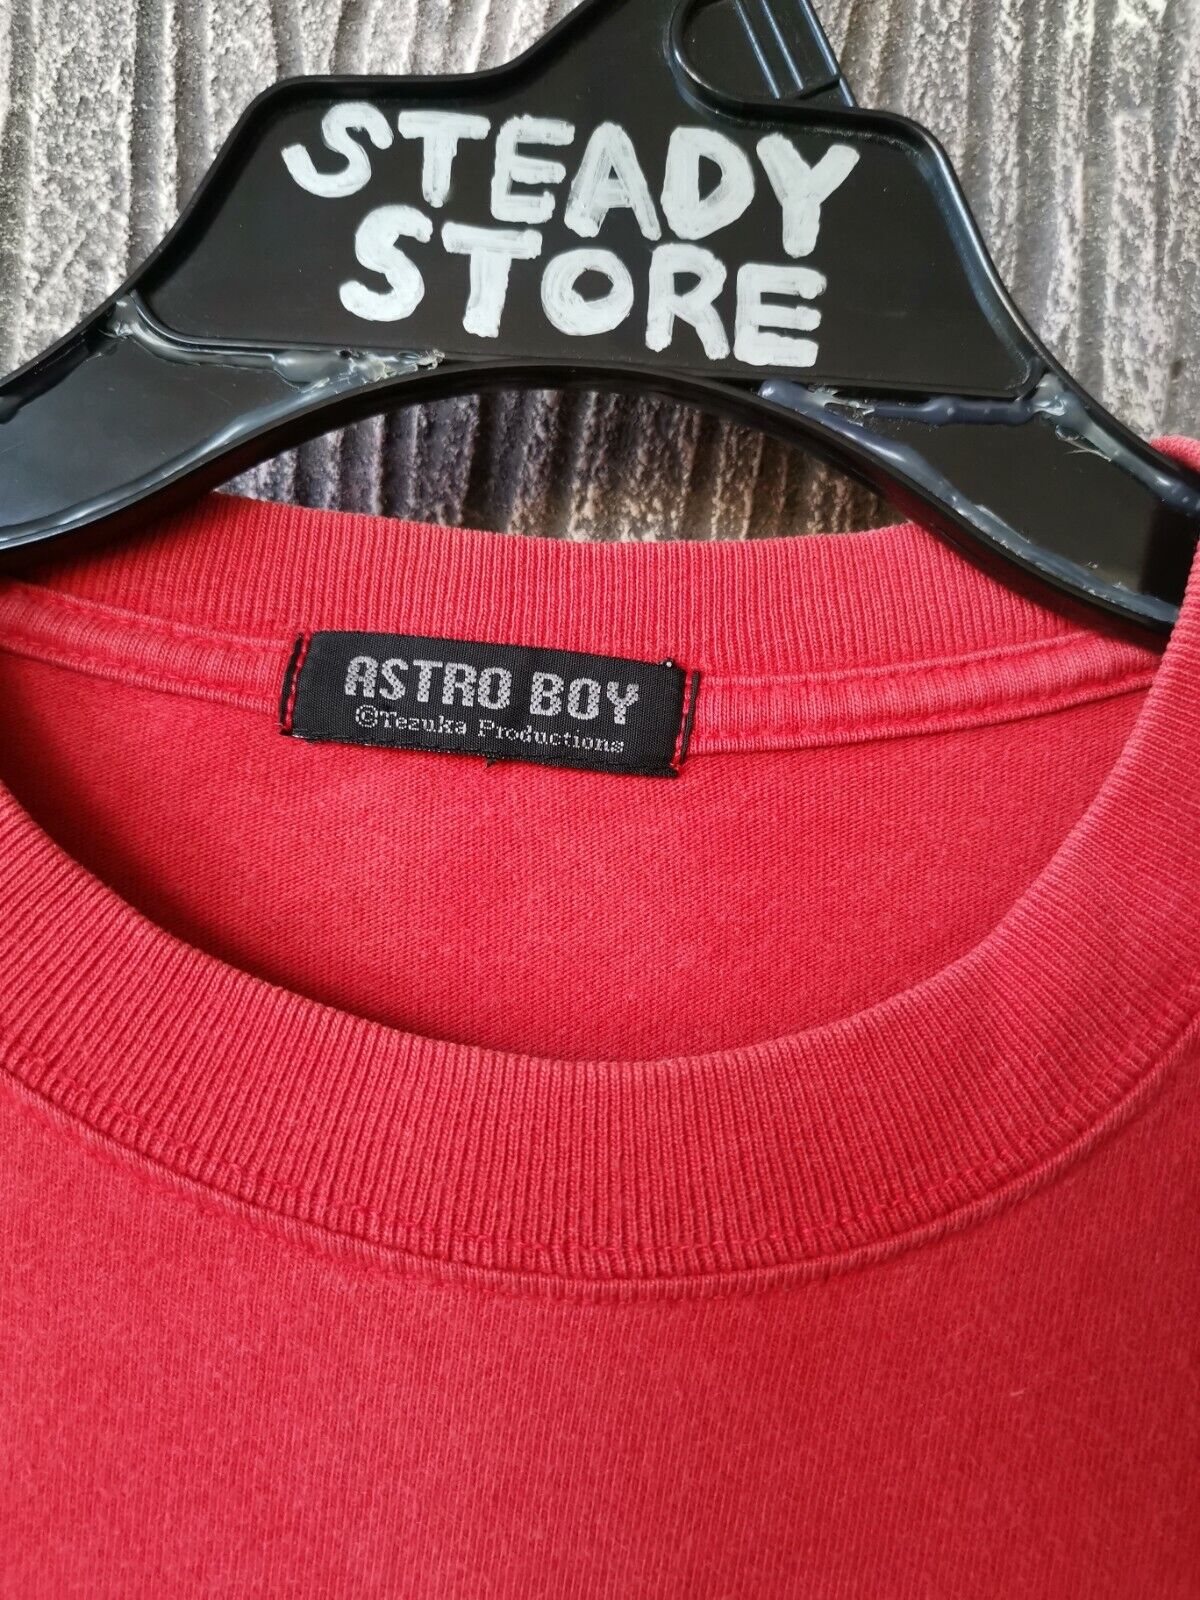 mighty atom astro boy shirt - Gem